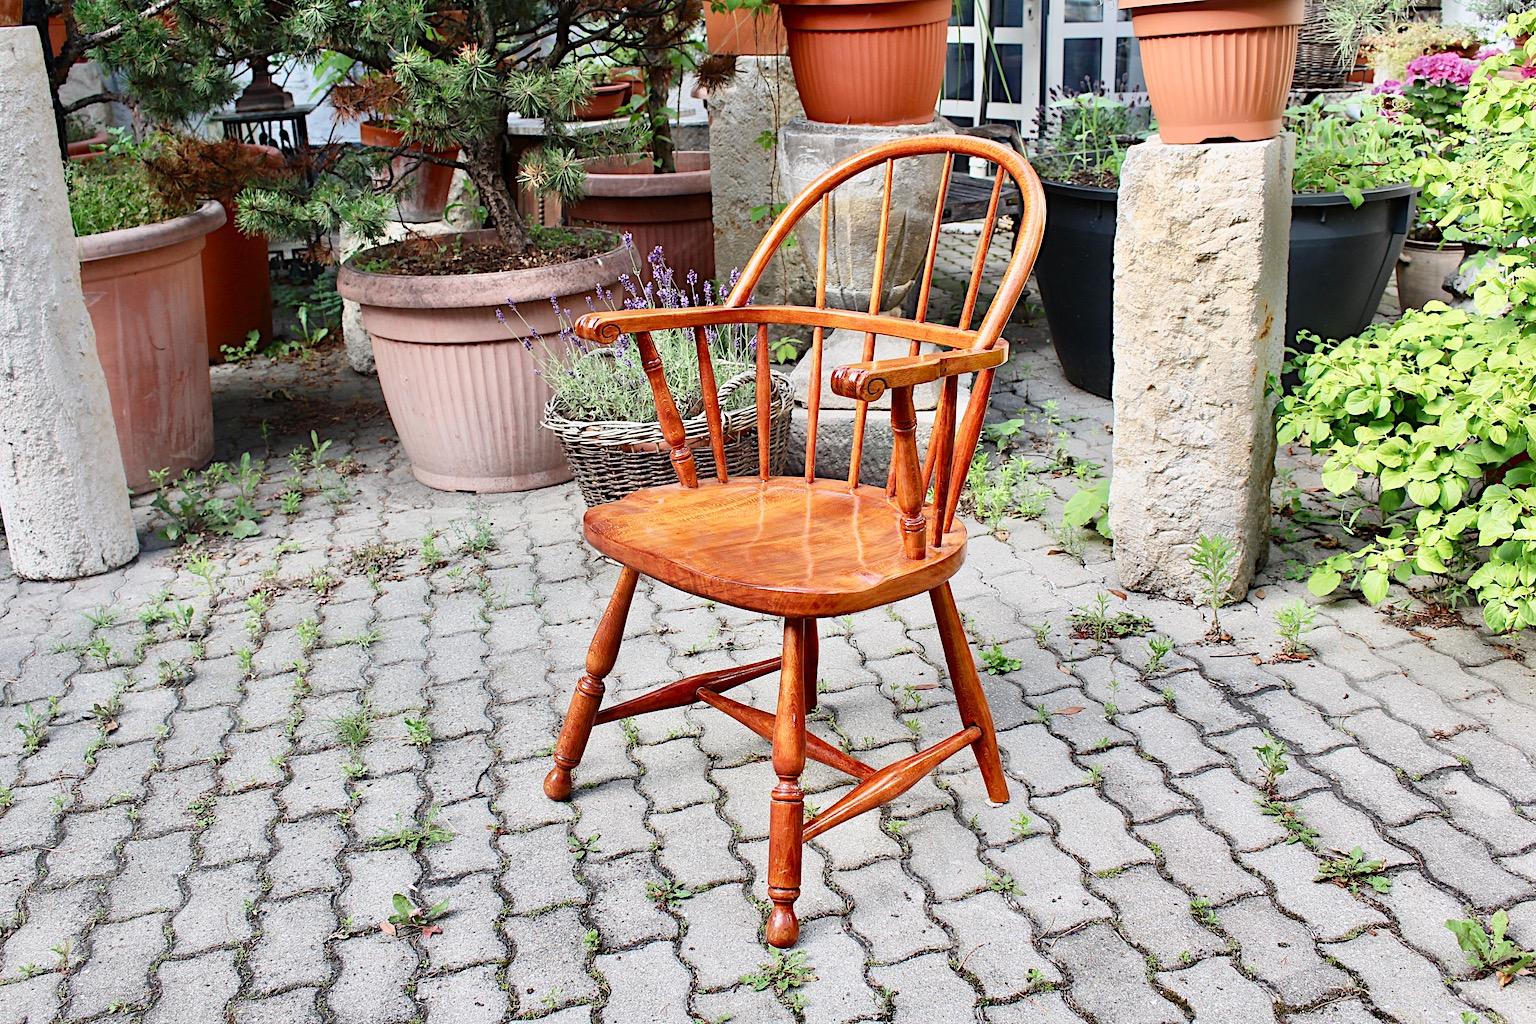 Fauteuil Art Déco vintage en hêtre brun ou chaise Windsor, qui a été conçu par Josef Frank, vers 1925, Autriche.
Le fauteuil a été réalisé en hêtre massif, teinté cerisier et laqué naturel. Ainsi, le ton brun chaud s'accorde parfaitement avec le